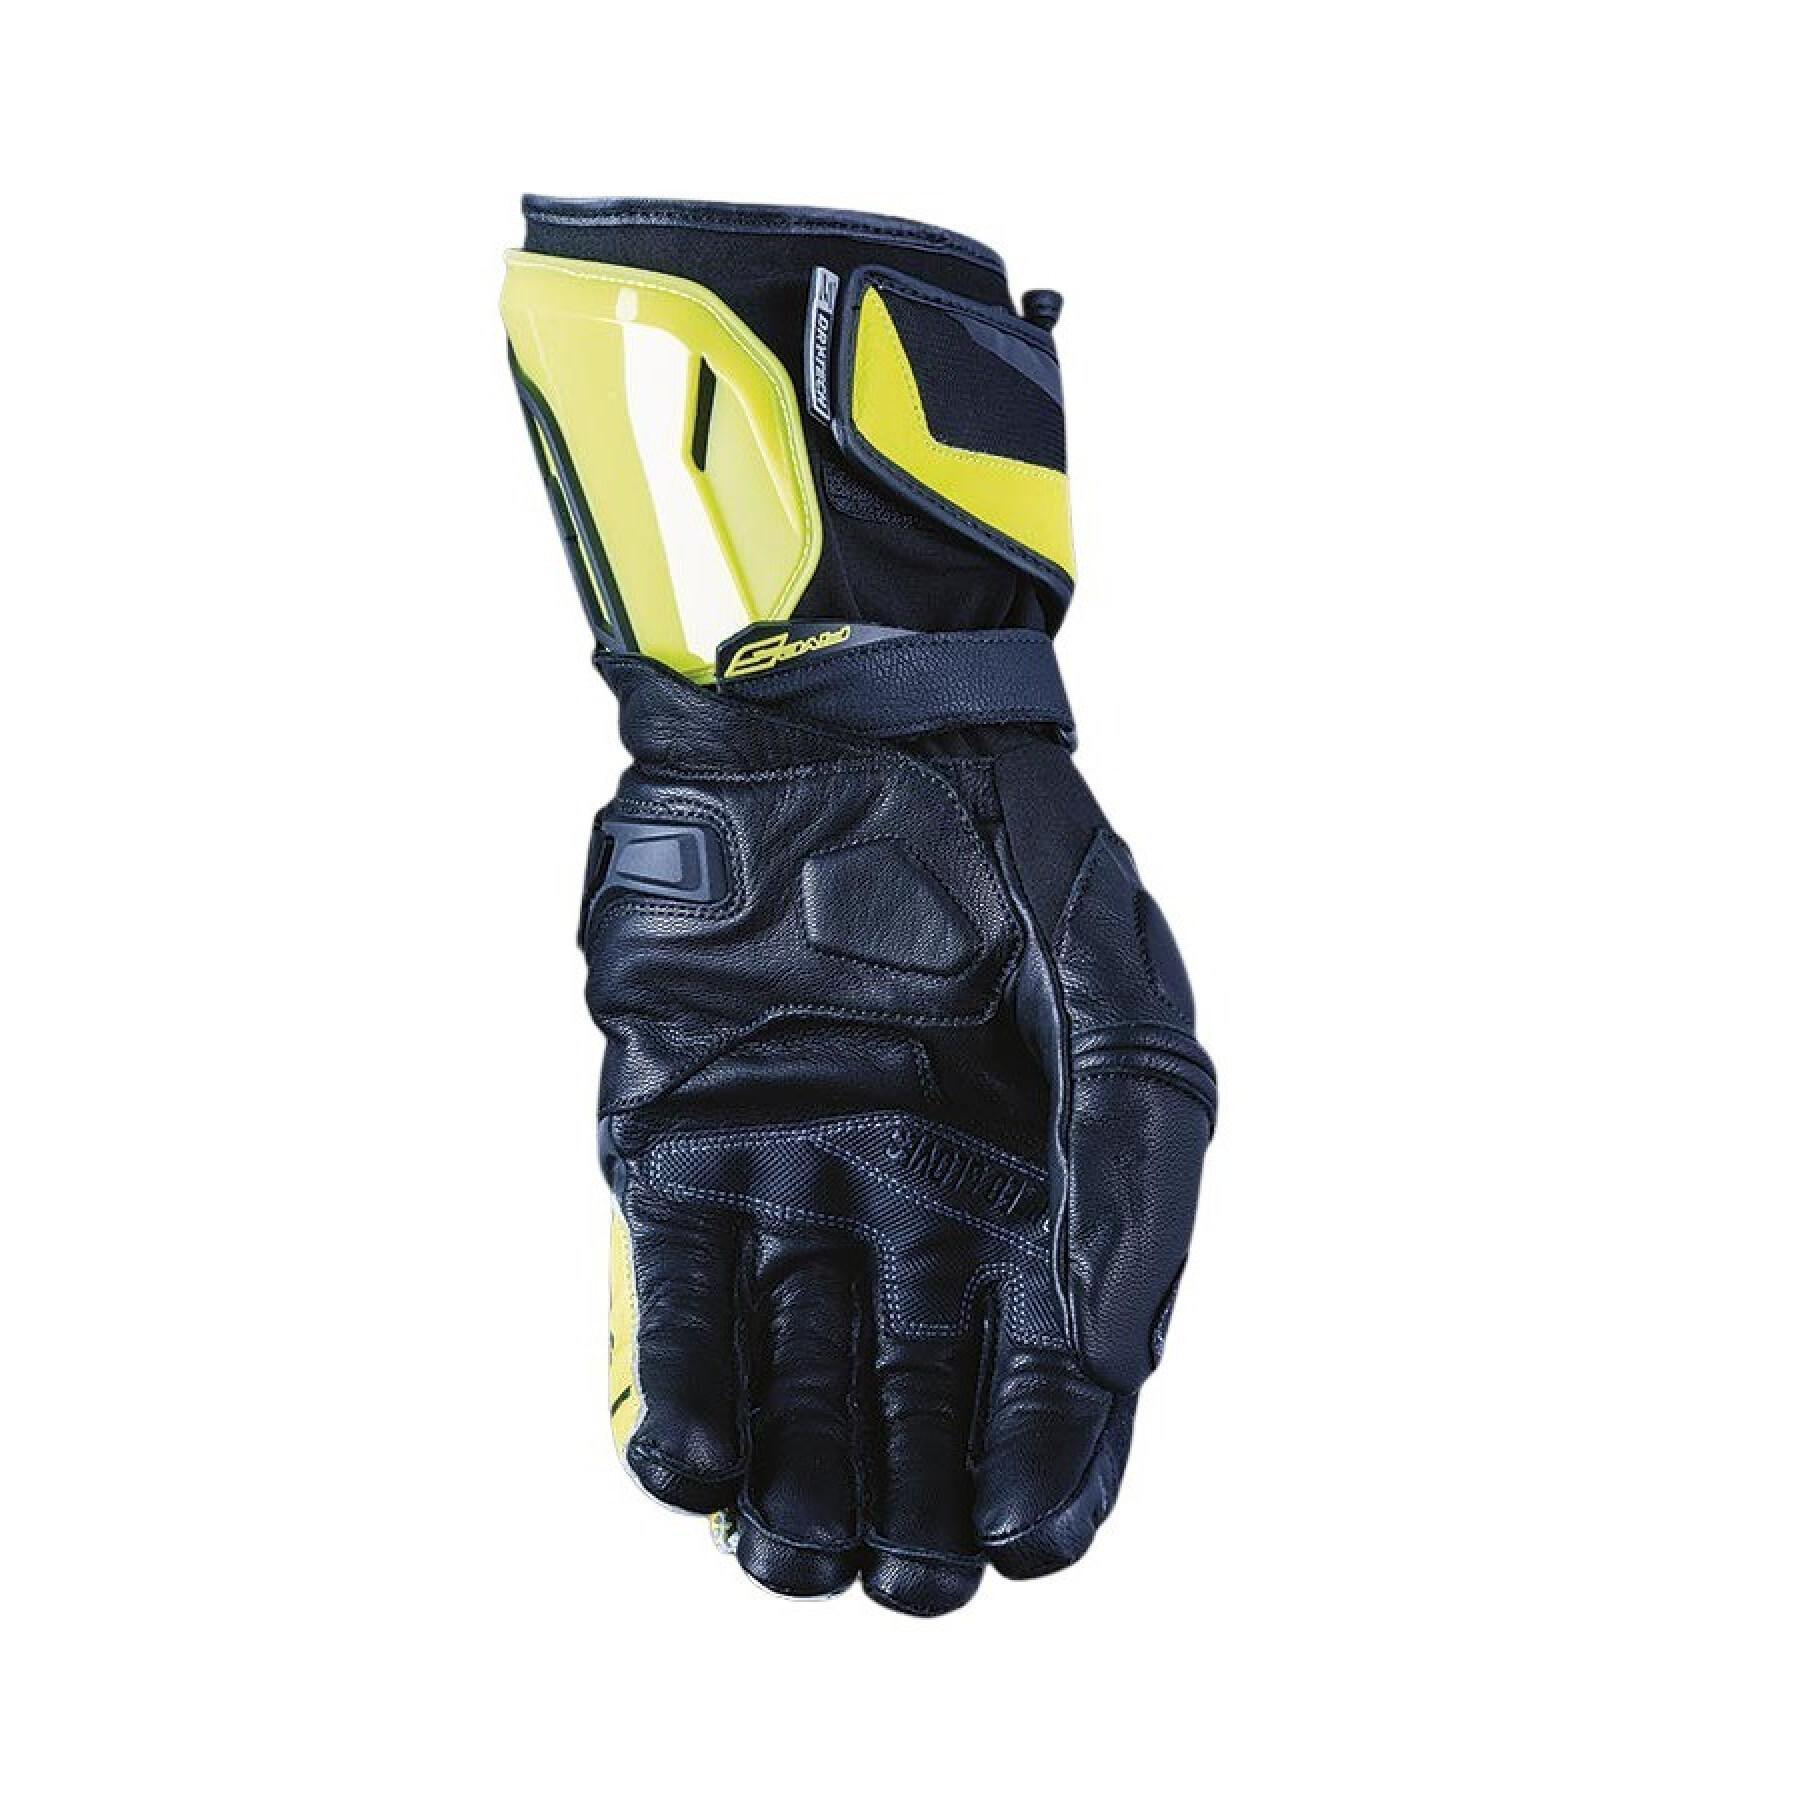 Winter motorcycle gloves Five RFXWP